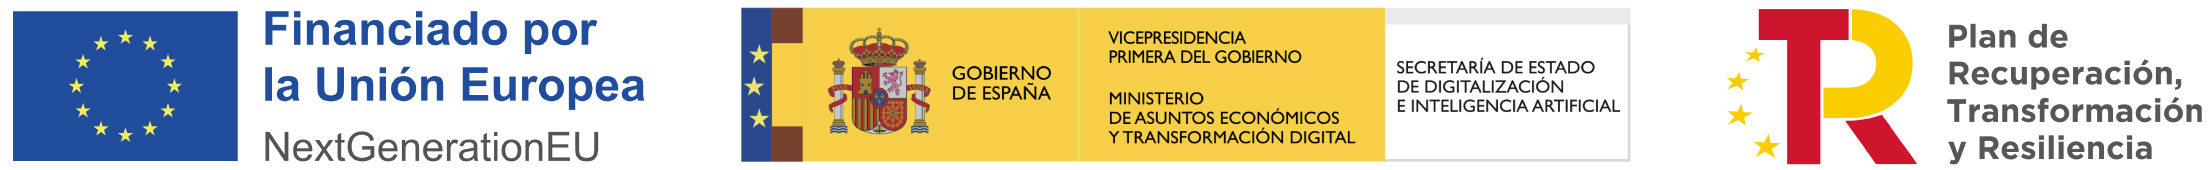 Logotipos de los organismos oficiales de la adjudicación de la ayuda del Kit Digital.